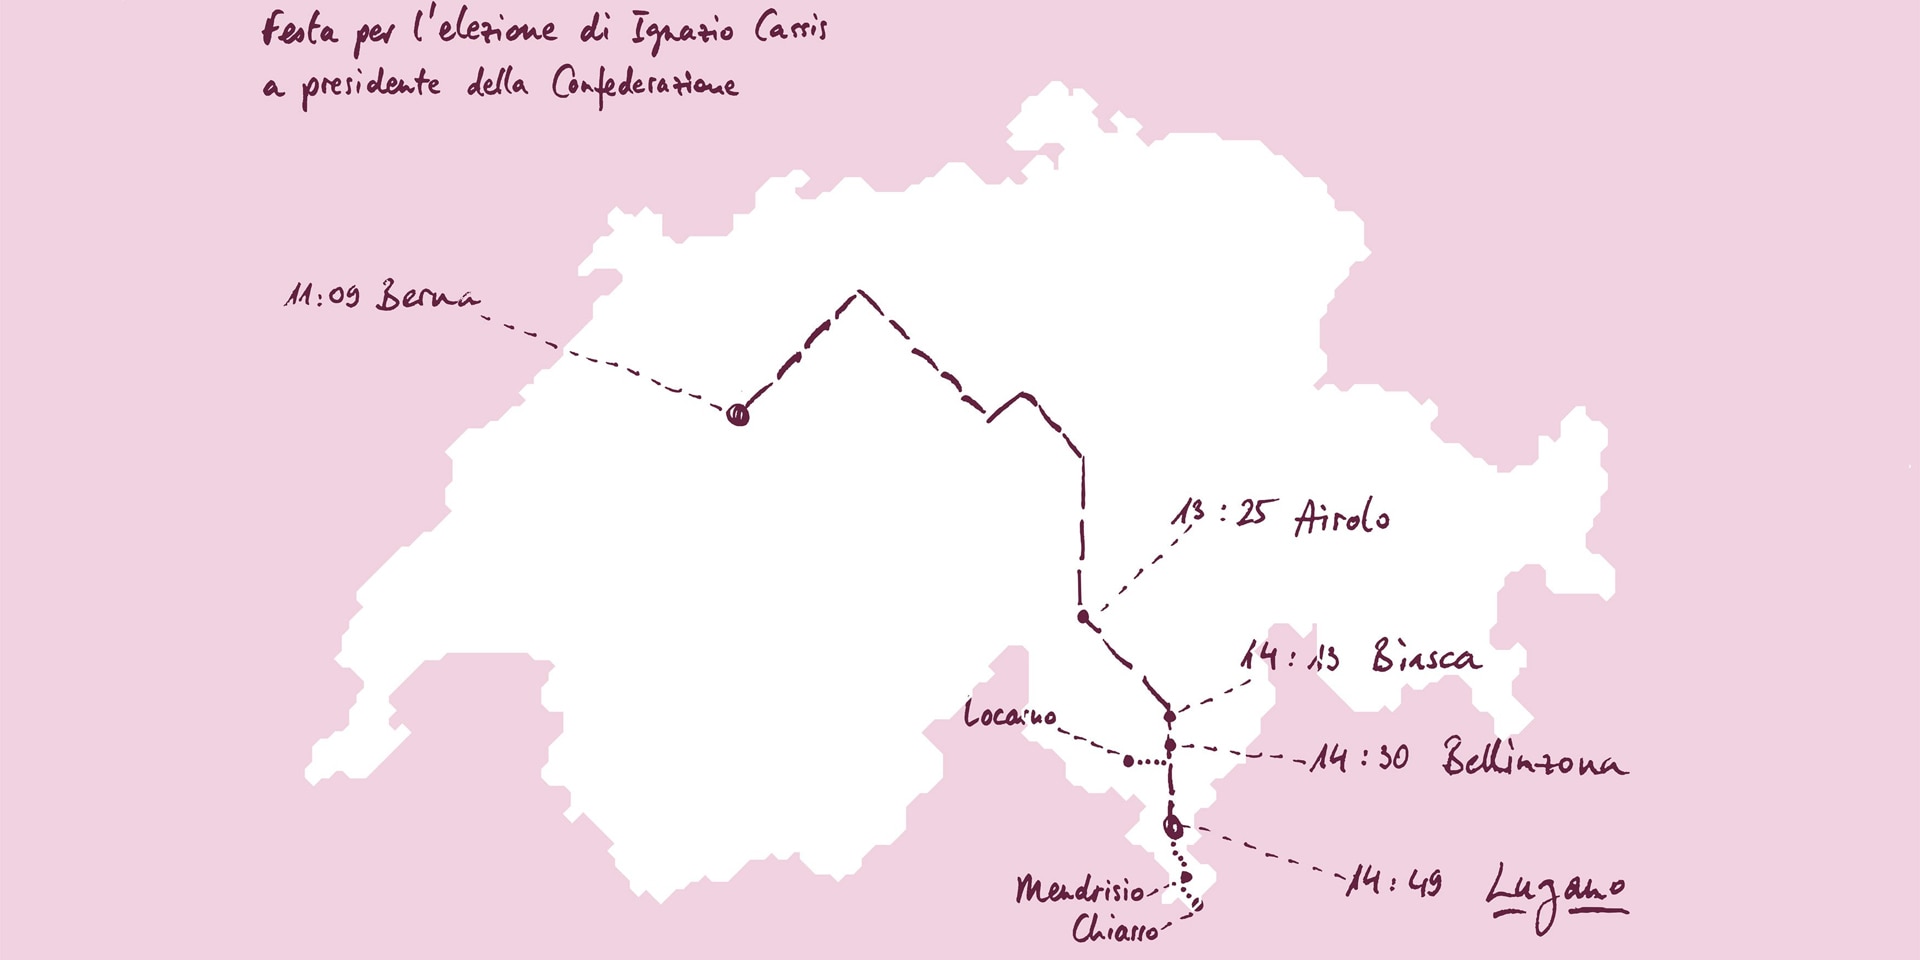 Une carte de la Suisse montre l'itinéraire du voyage du président Cassis ainsi que les communes qui participeront aux célébrations.